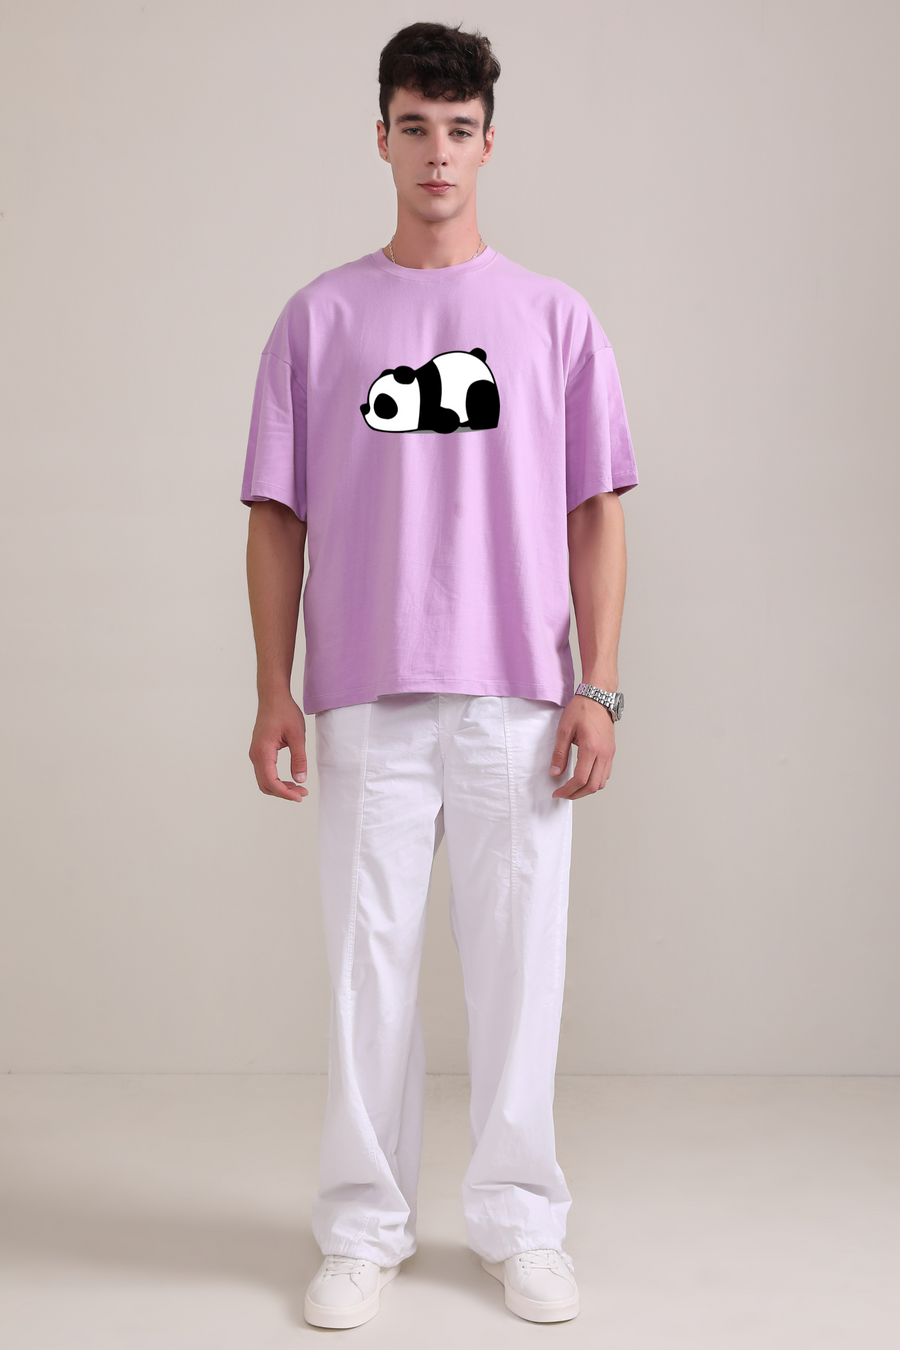 Panda- Oversized t-shirt